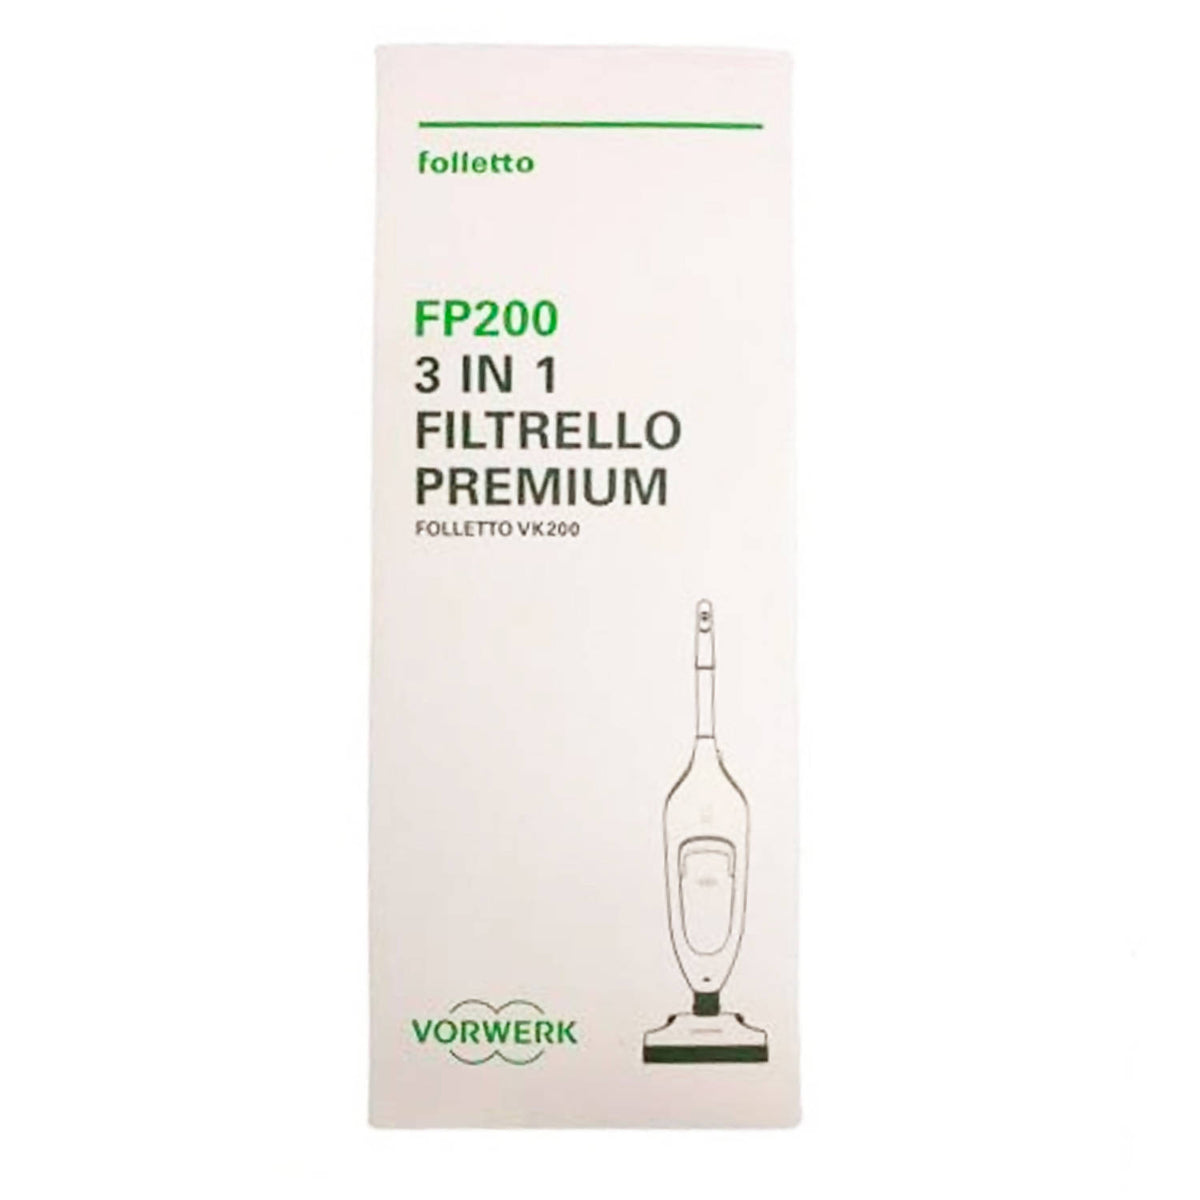 Filtrello Premium Fp200 Sacchetti Per Folletto Modello Vk 200 Vk